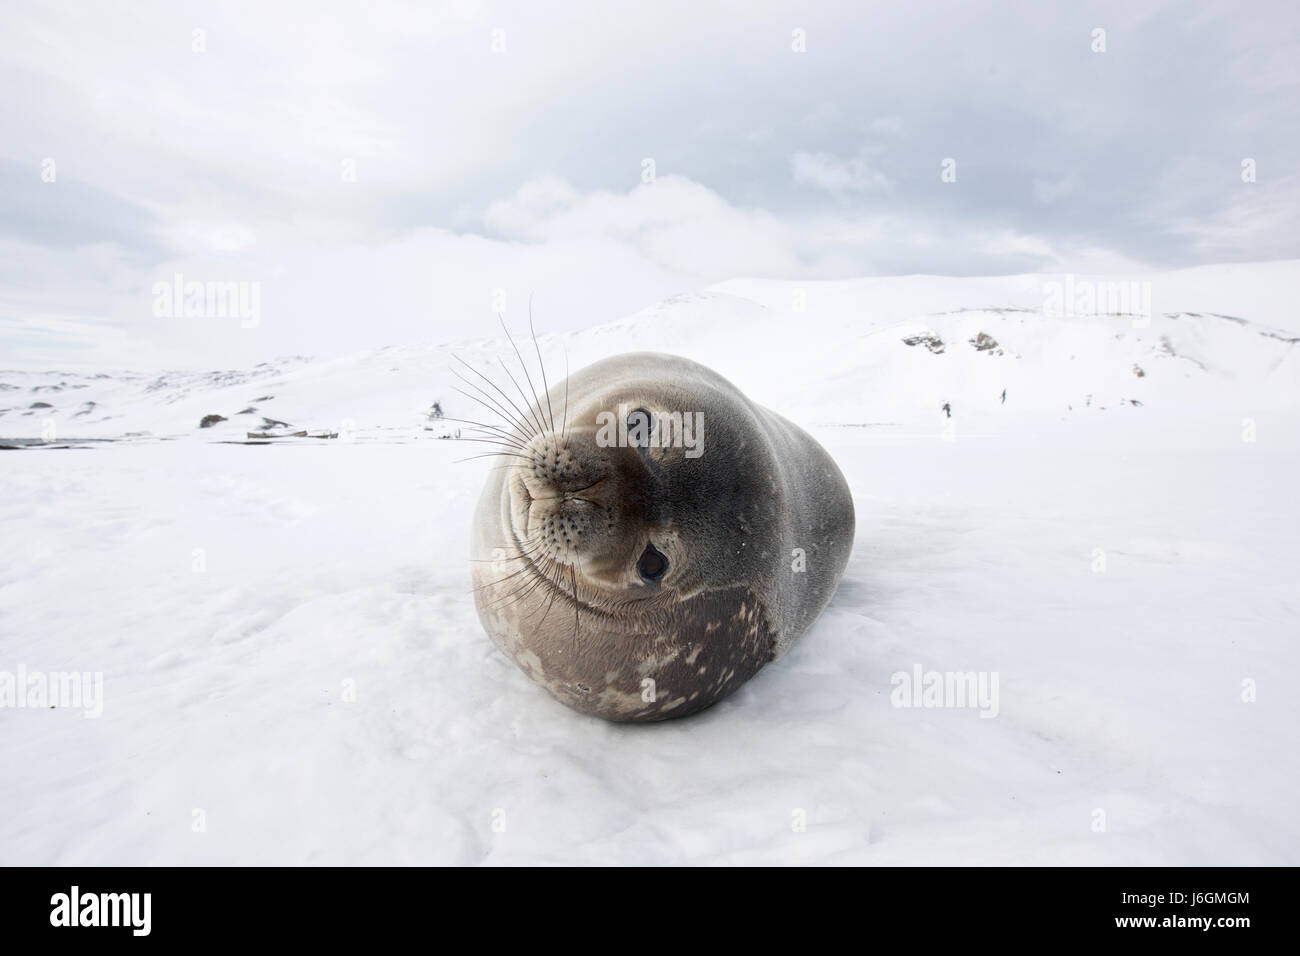 Weddell seal, Leptonychotes weddellii Stock Photo